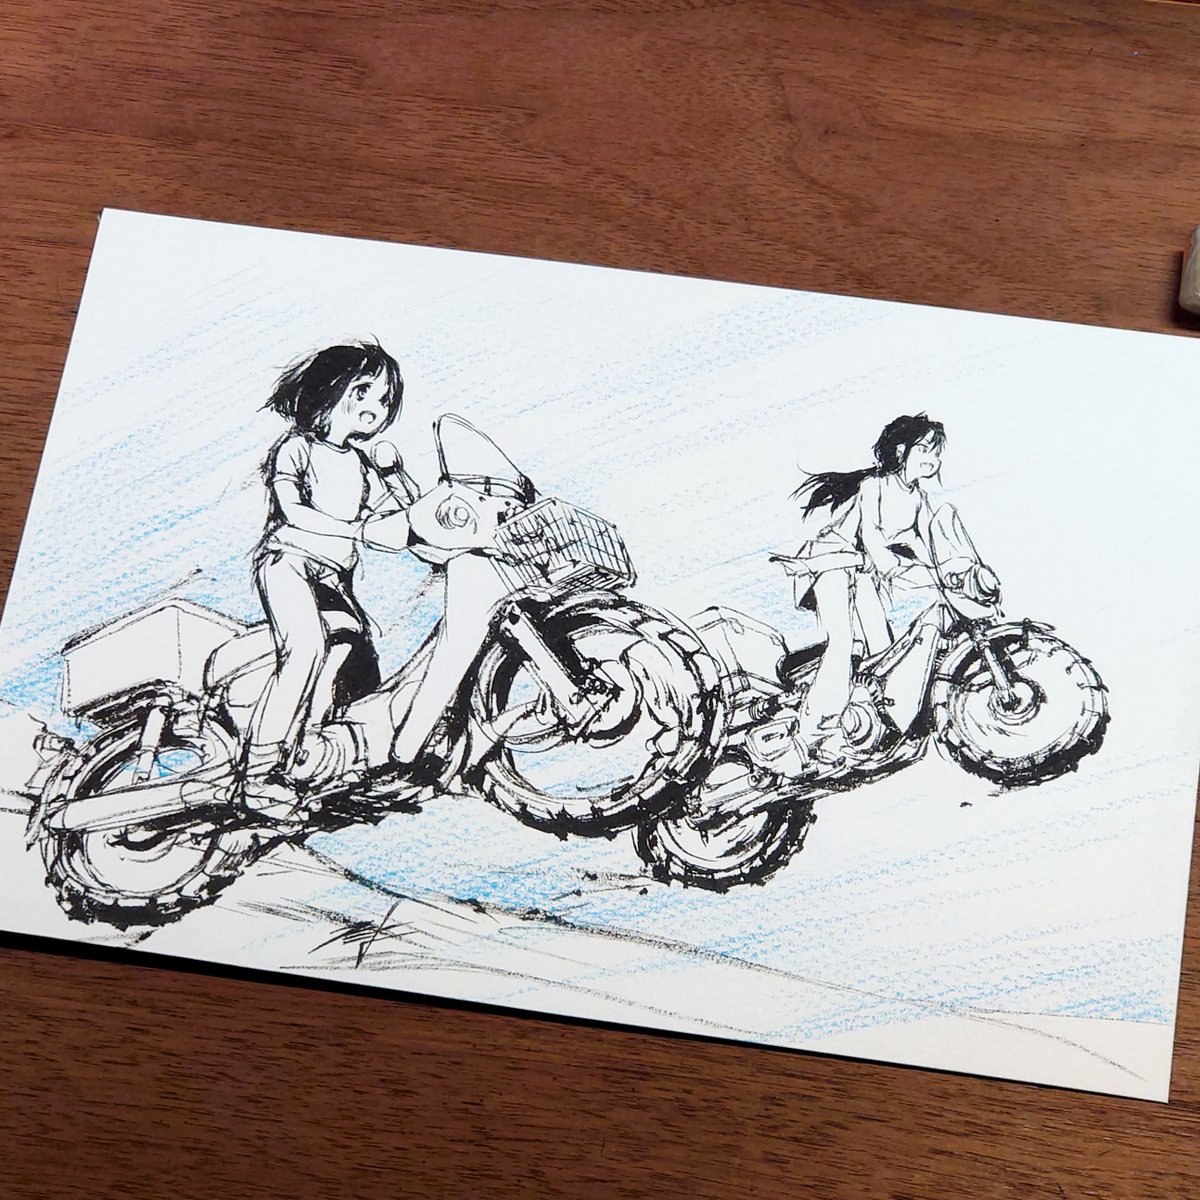 今日は #バイクの日 ということで。バイクを全身描いた絵を #スーパーカブ から。 